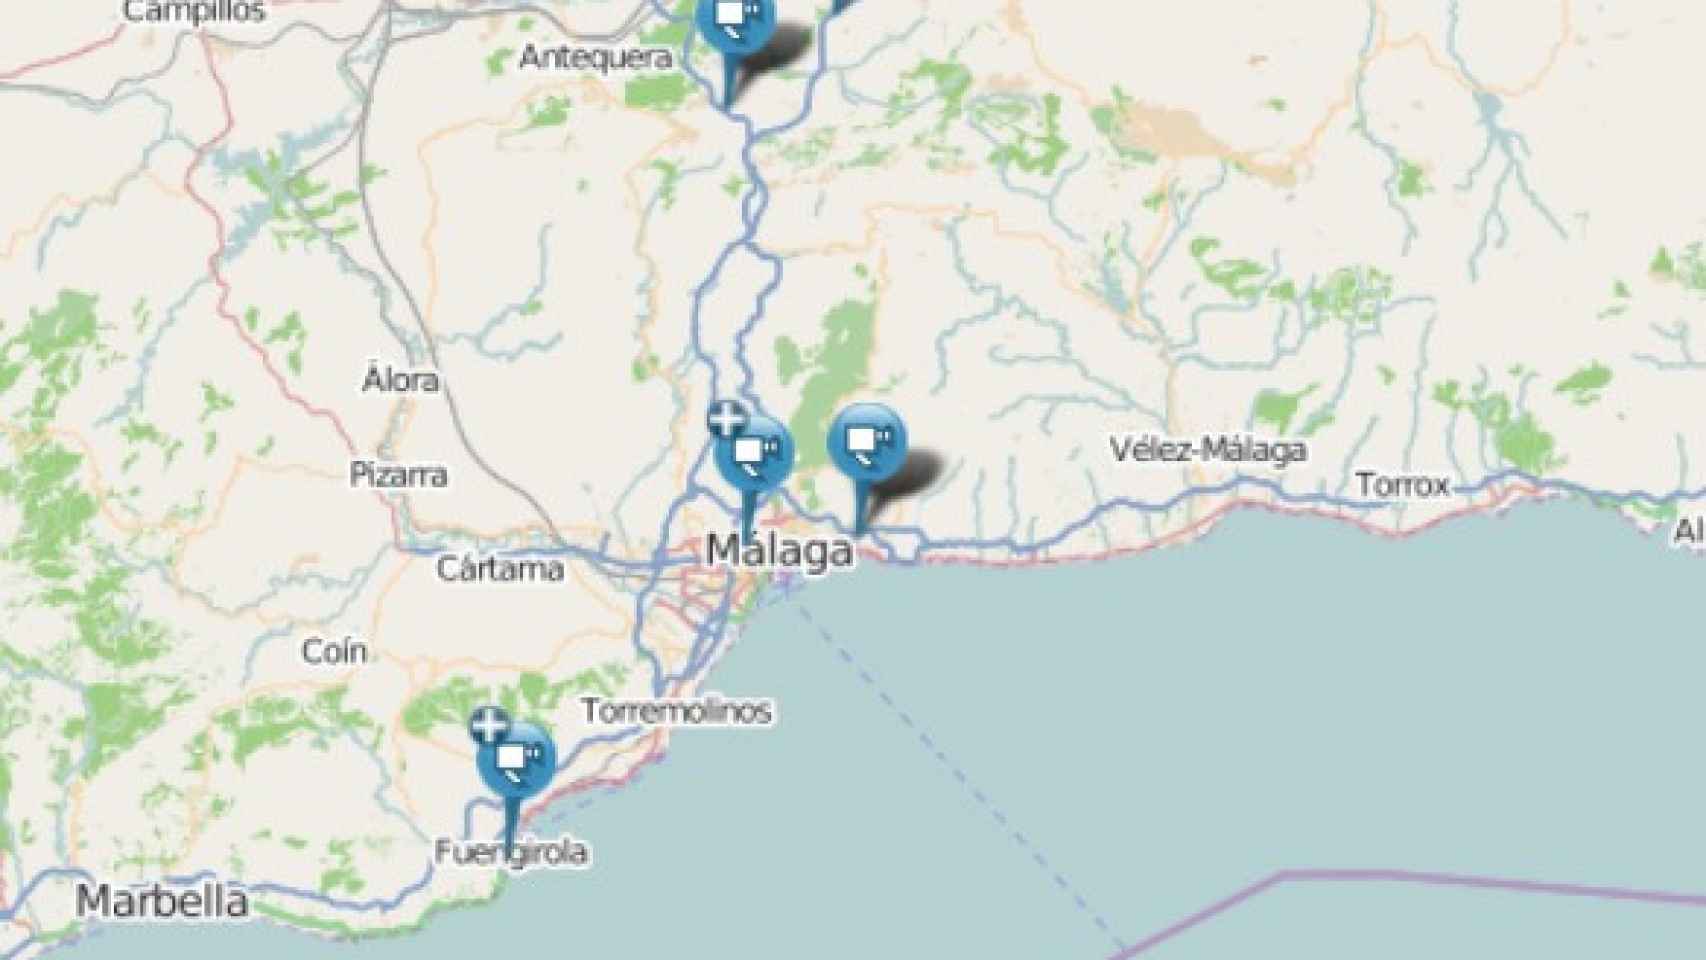 Mapa de la DGT correspondiente a Málaga.